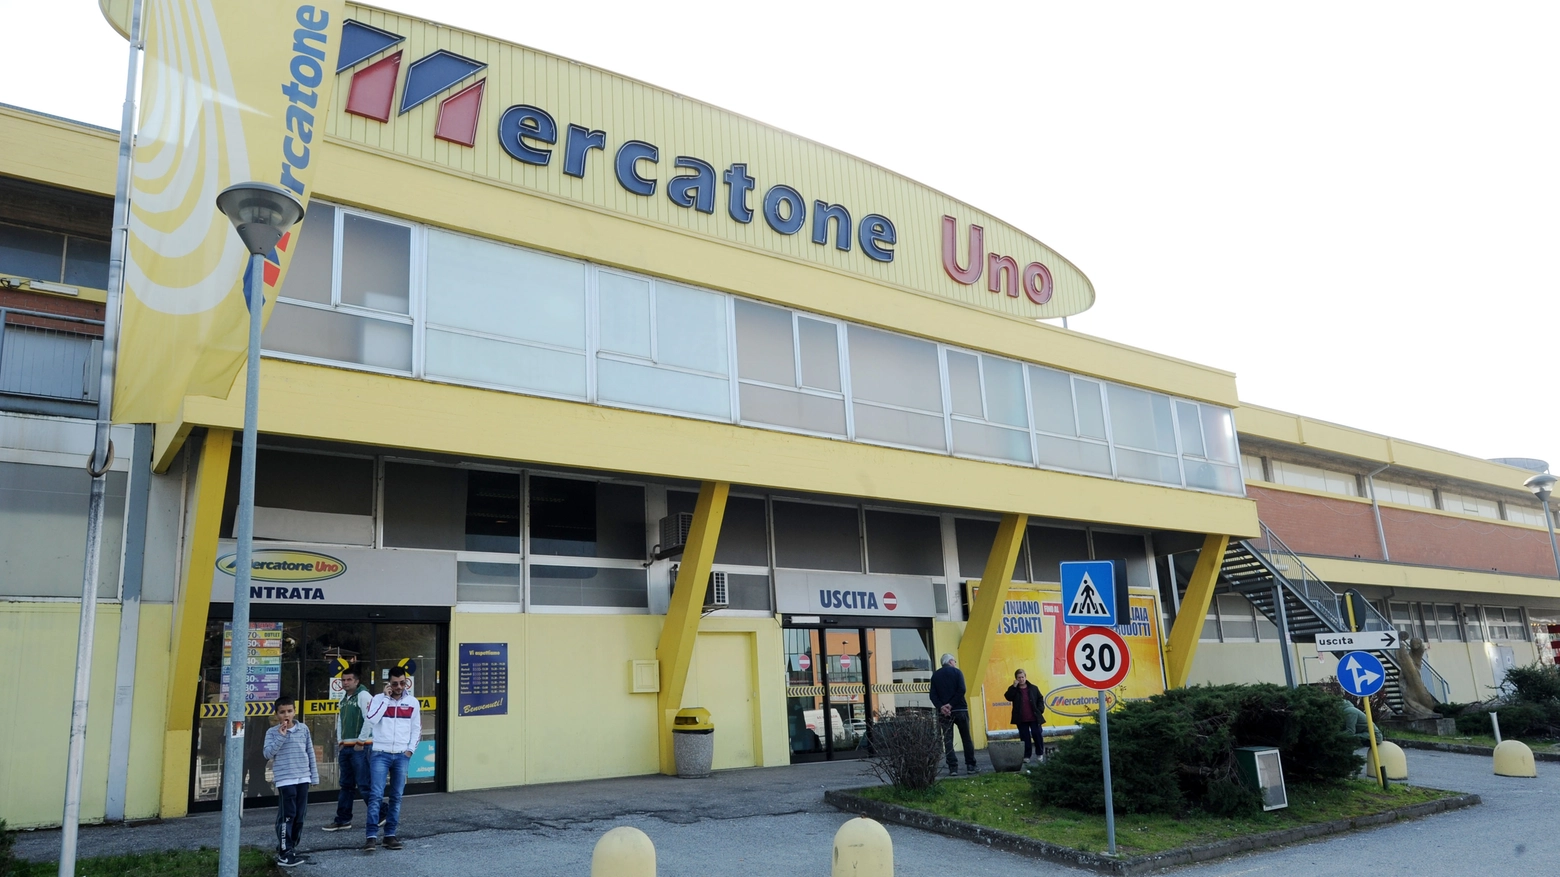 Uno dei punti vendita a marchio Mercatone Uno (Foto d'archivio Crocchioni)